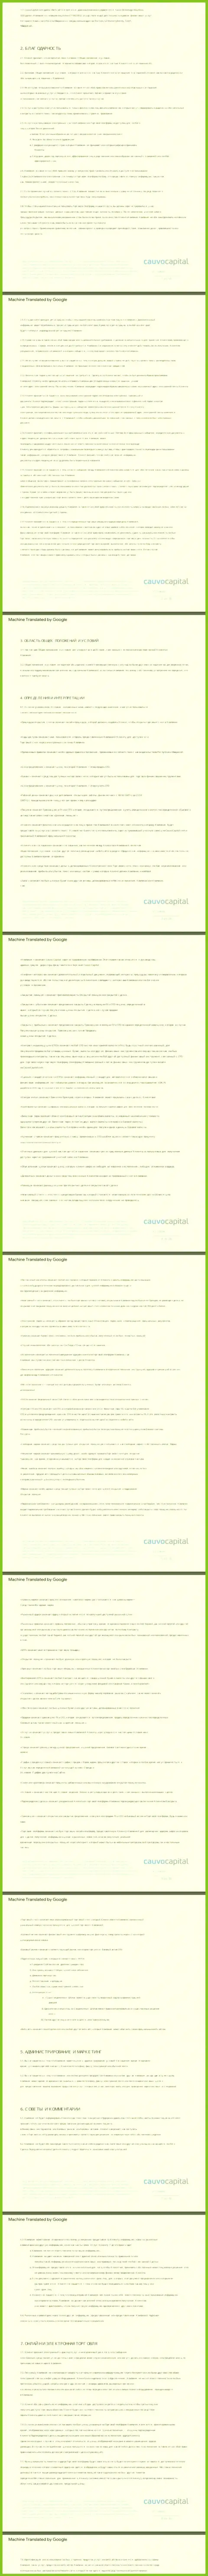 Часть 1 пользовательского соглашения организации Cauvo Capital